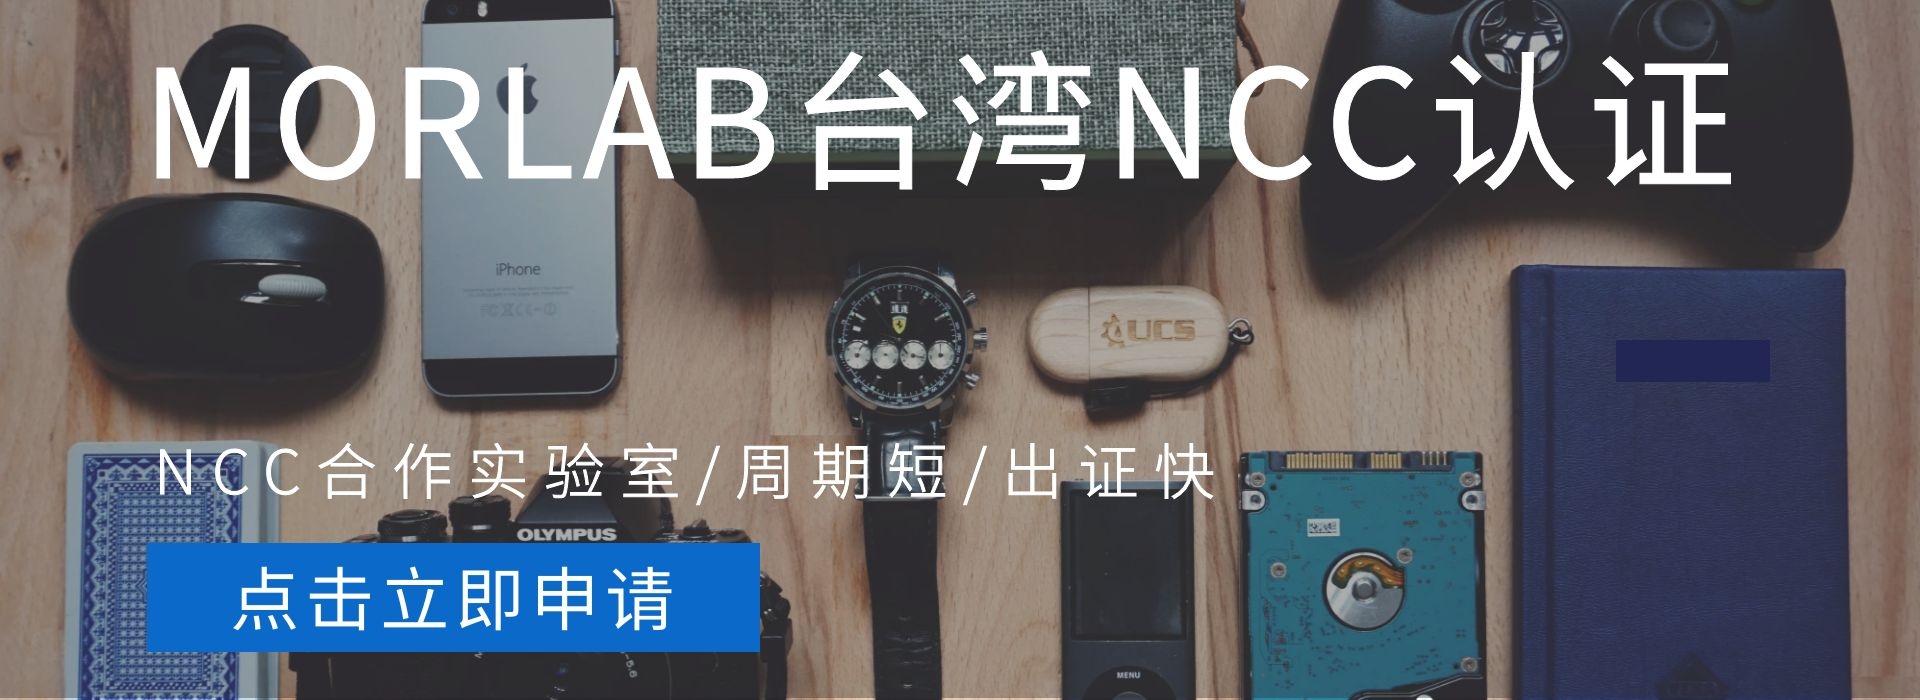 台湾无线NCC认证